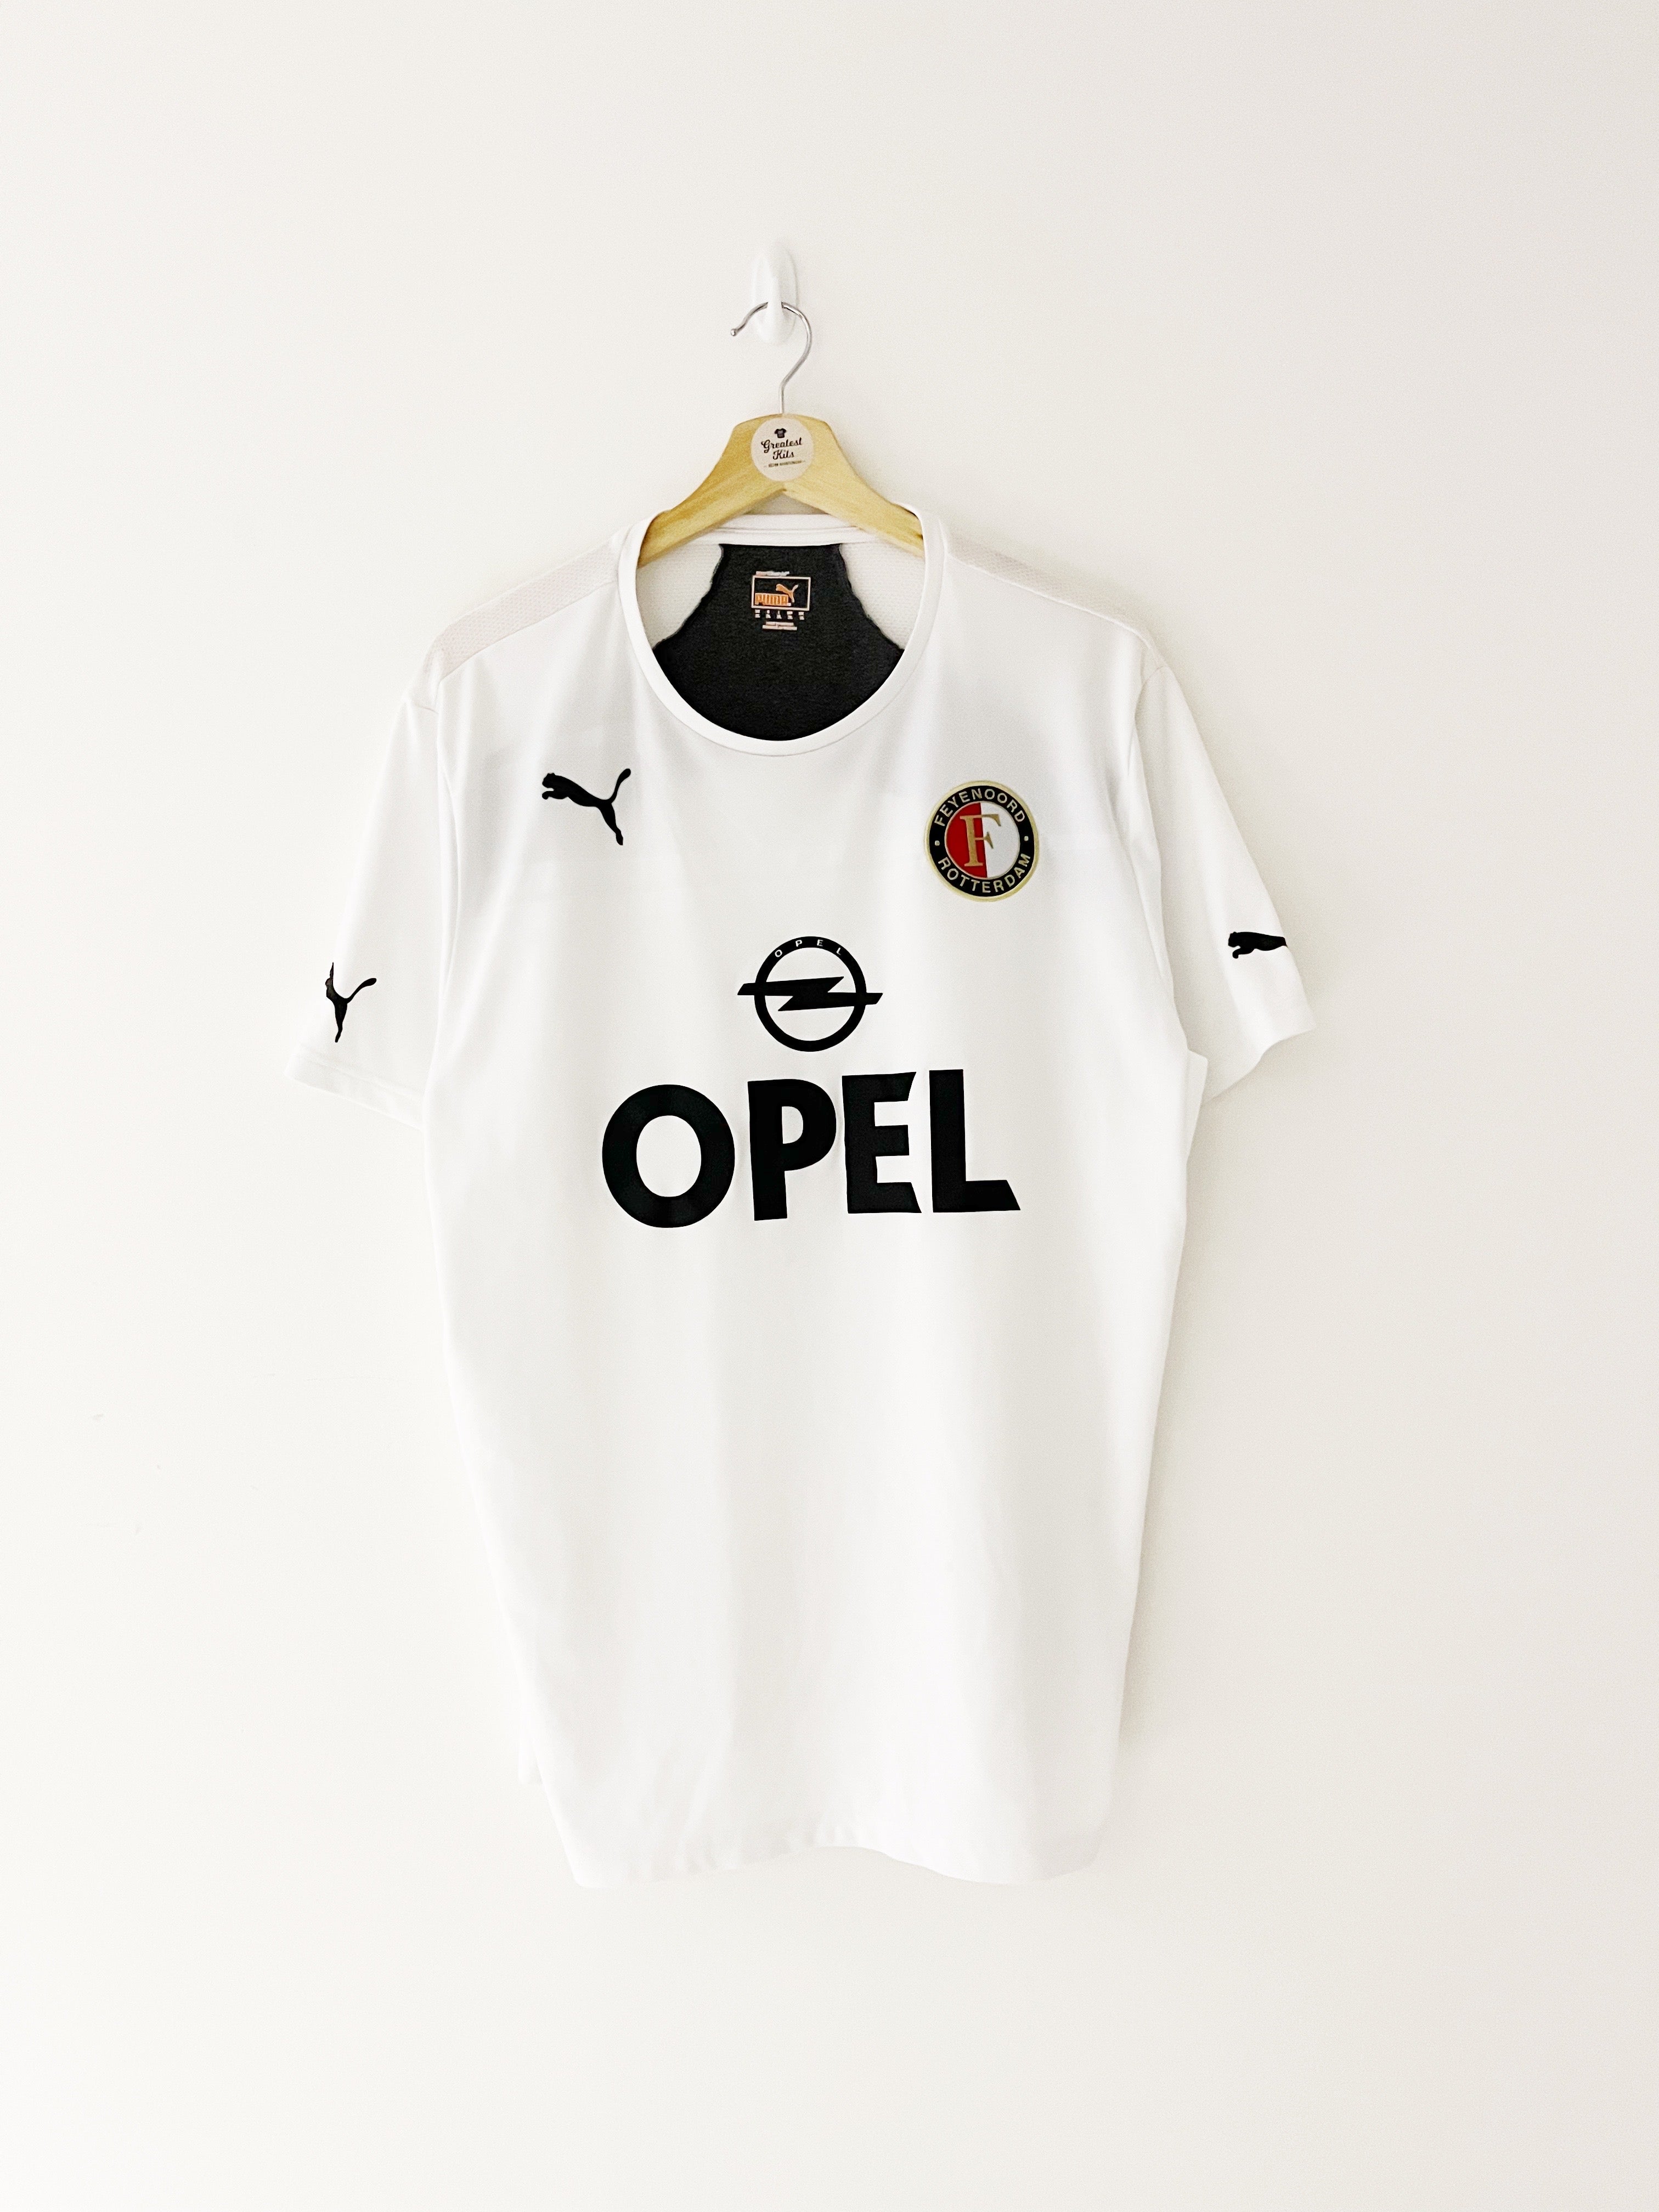 Maillot d'entraînement Feyenoord 2013/14 (XL) 9/10